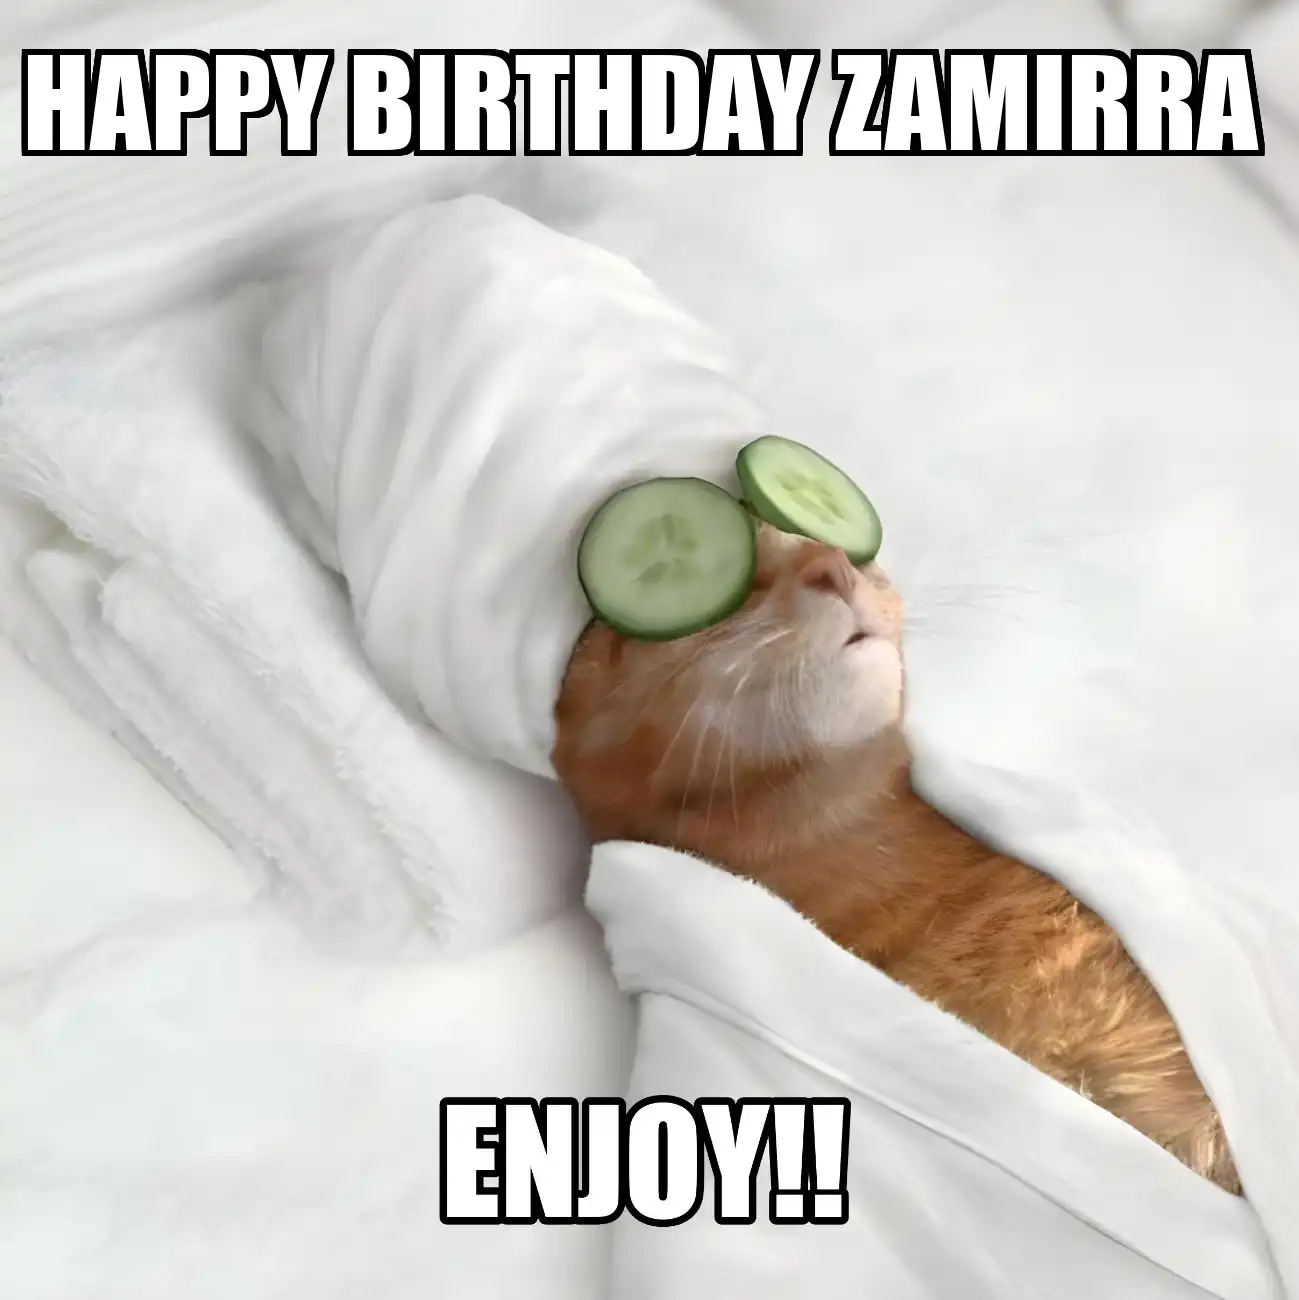 Happy Birthday Zamirra Enjoy Cat Meme